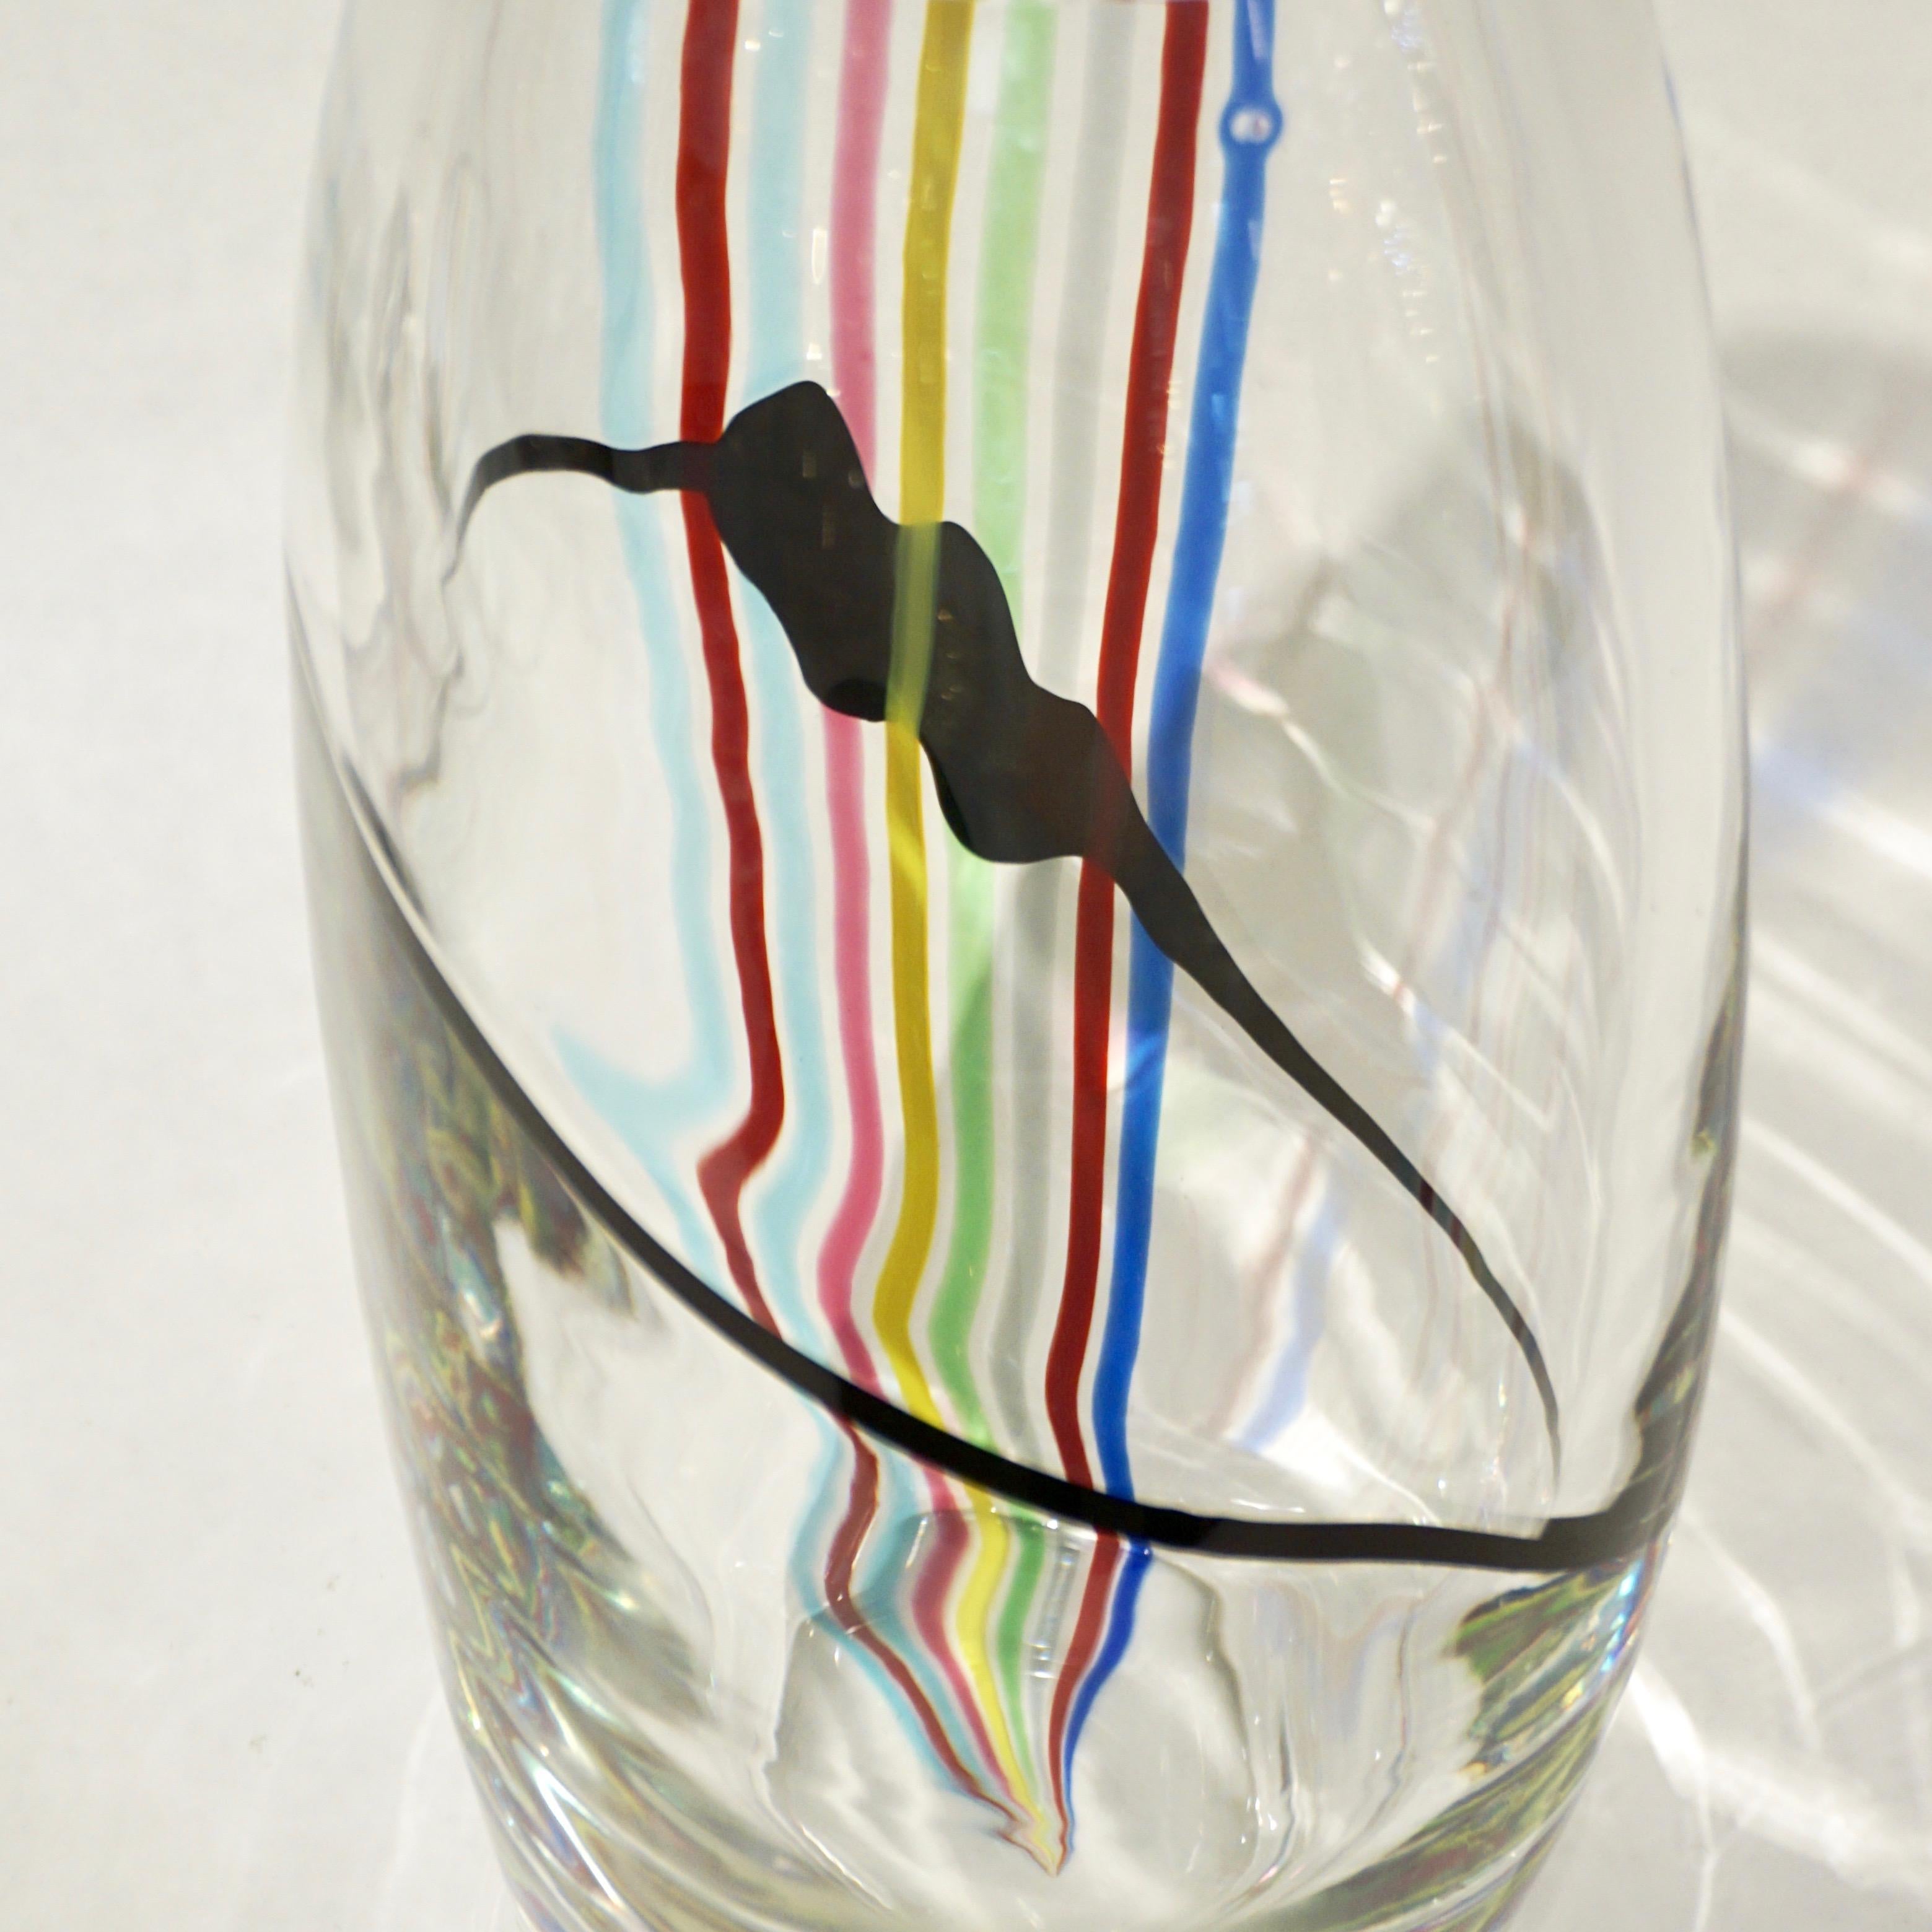 Formia 1970er Jahre Vintage italienisches modernes Design Vase oder Tafelaufsatz der organischen eiförmigen Form, in mundgeblasenem kristallklarem Muranoglas mit Regenbogenstreifen in rot, aqua blau, rosa, Apfelgrün, gelb, dunkelblau, grau und